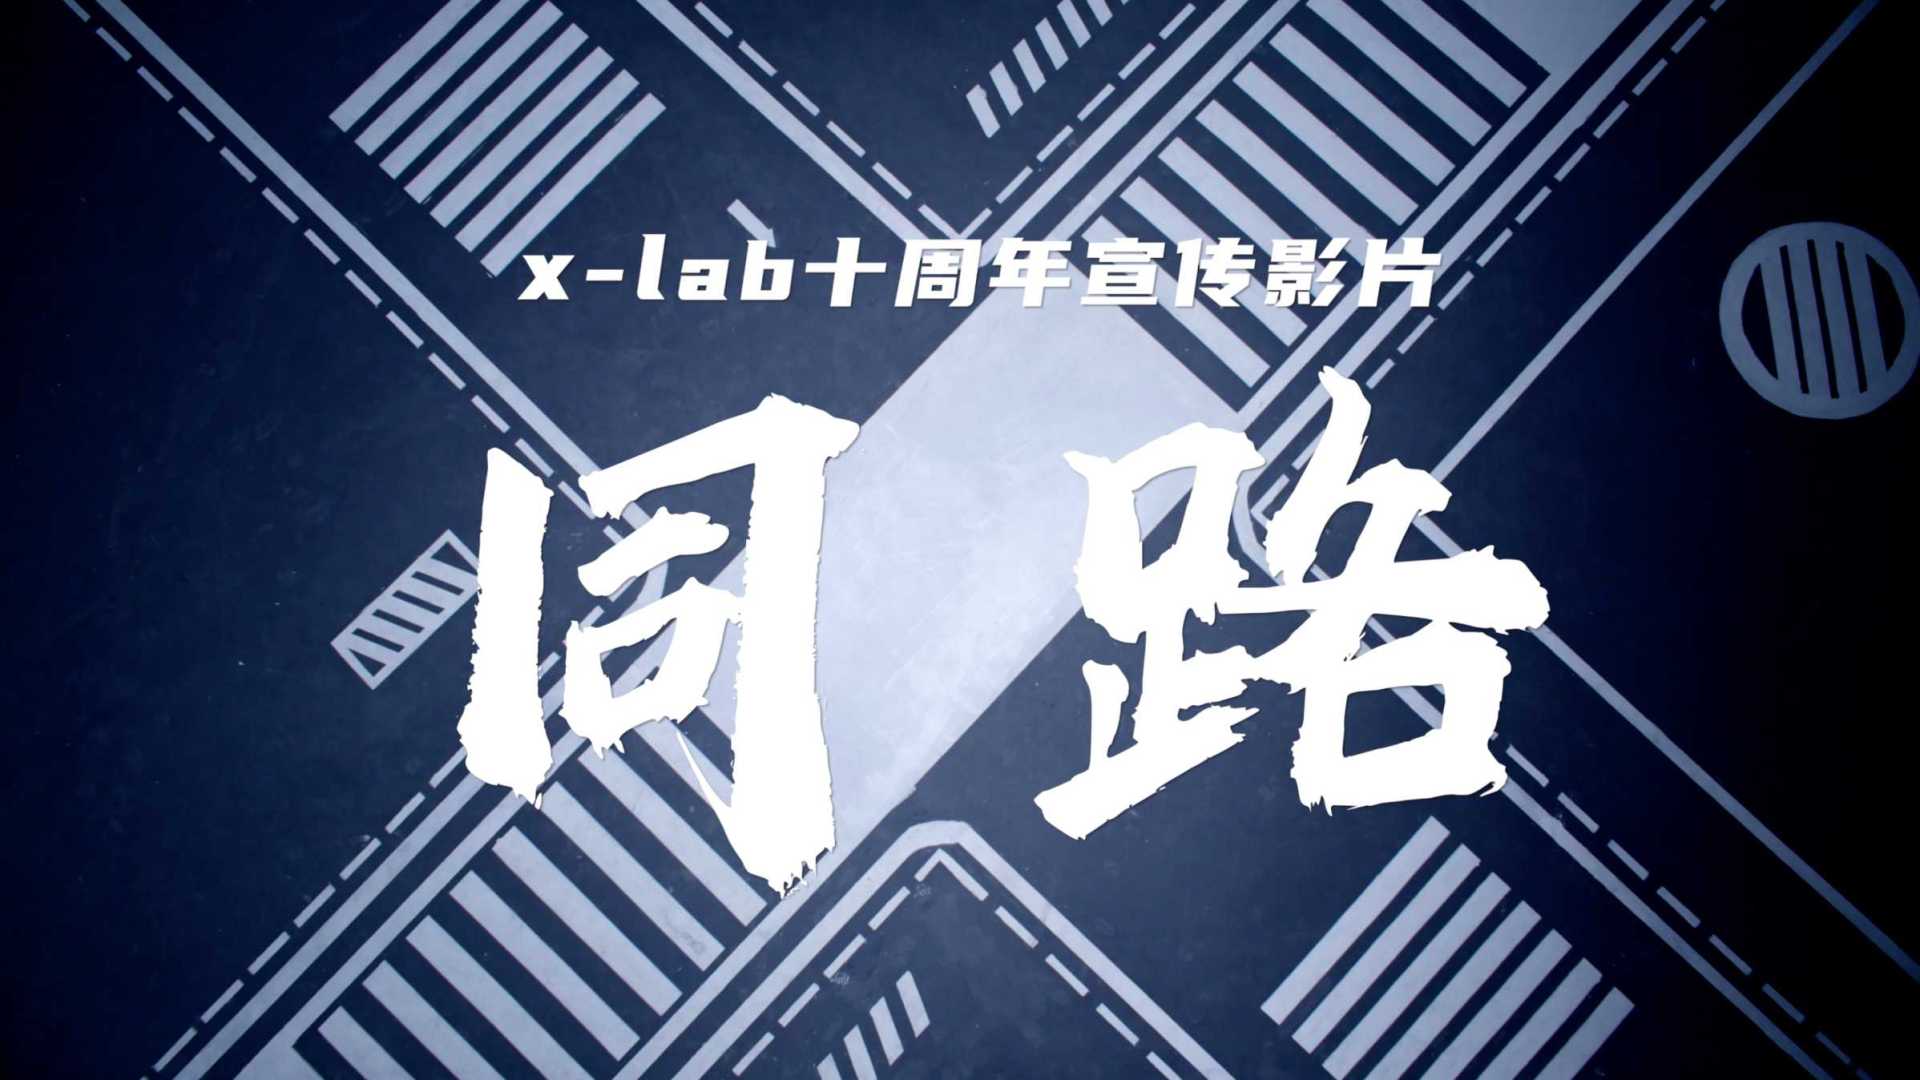 清华x-lab十周年宣传片